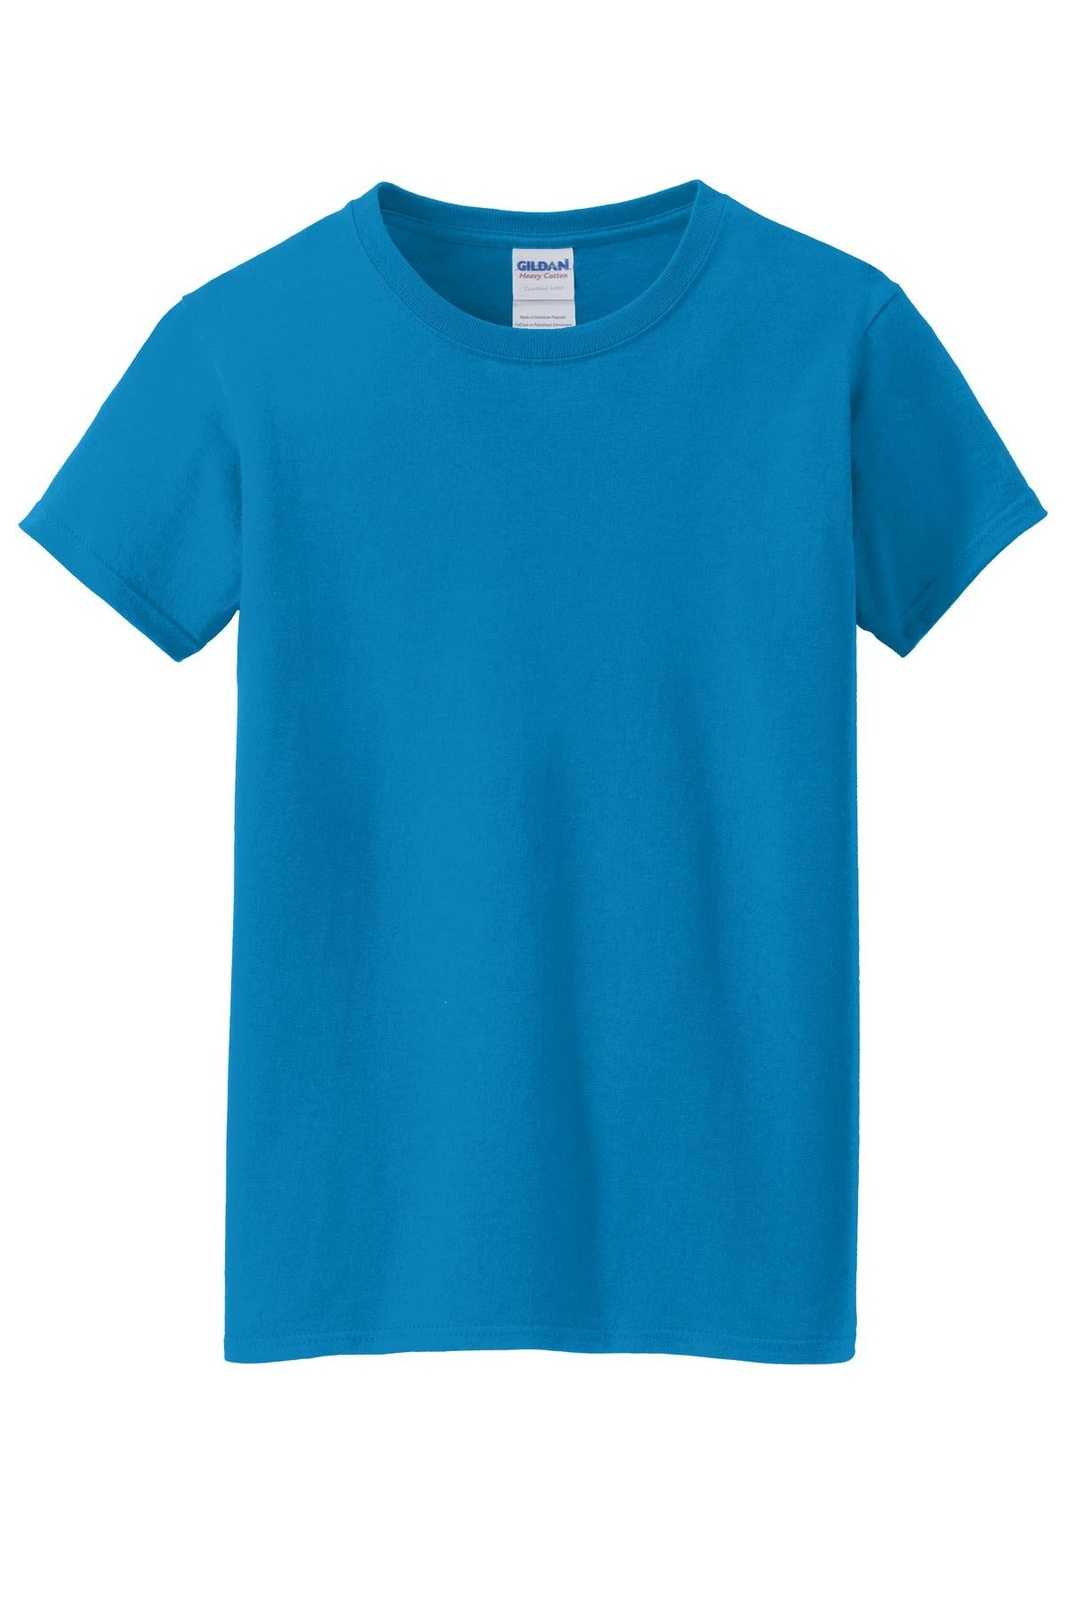 Gildan 5000L Ladies Heavy Cotton 100% Cotton T-Shirt - Sapphire - HIT a Double